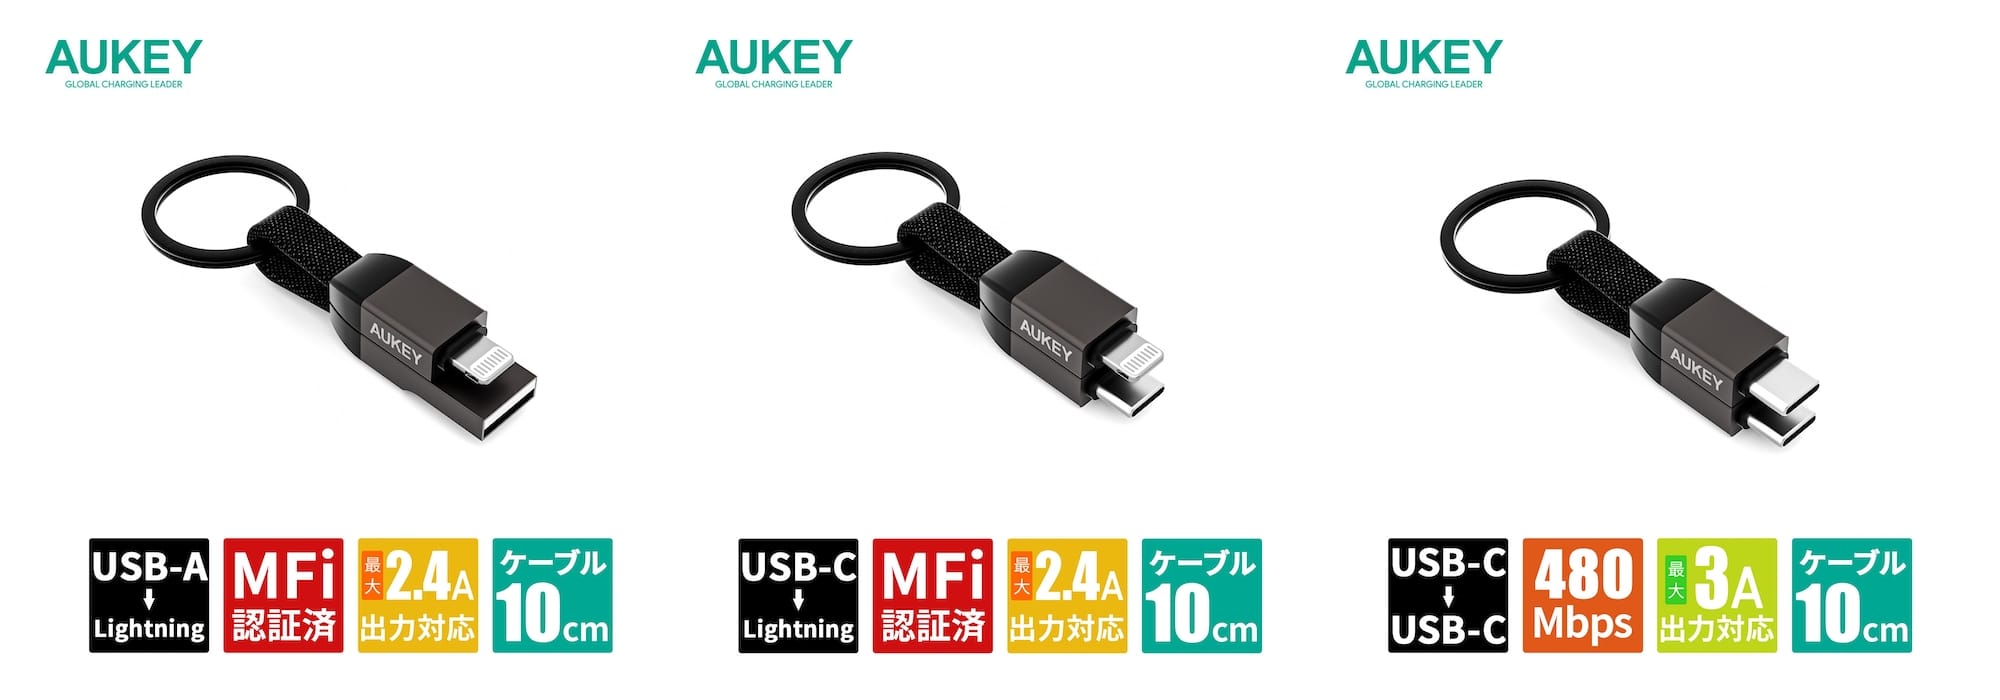 AUKEY、キーホルダー型USBケーブルを発売